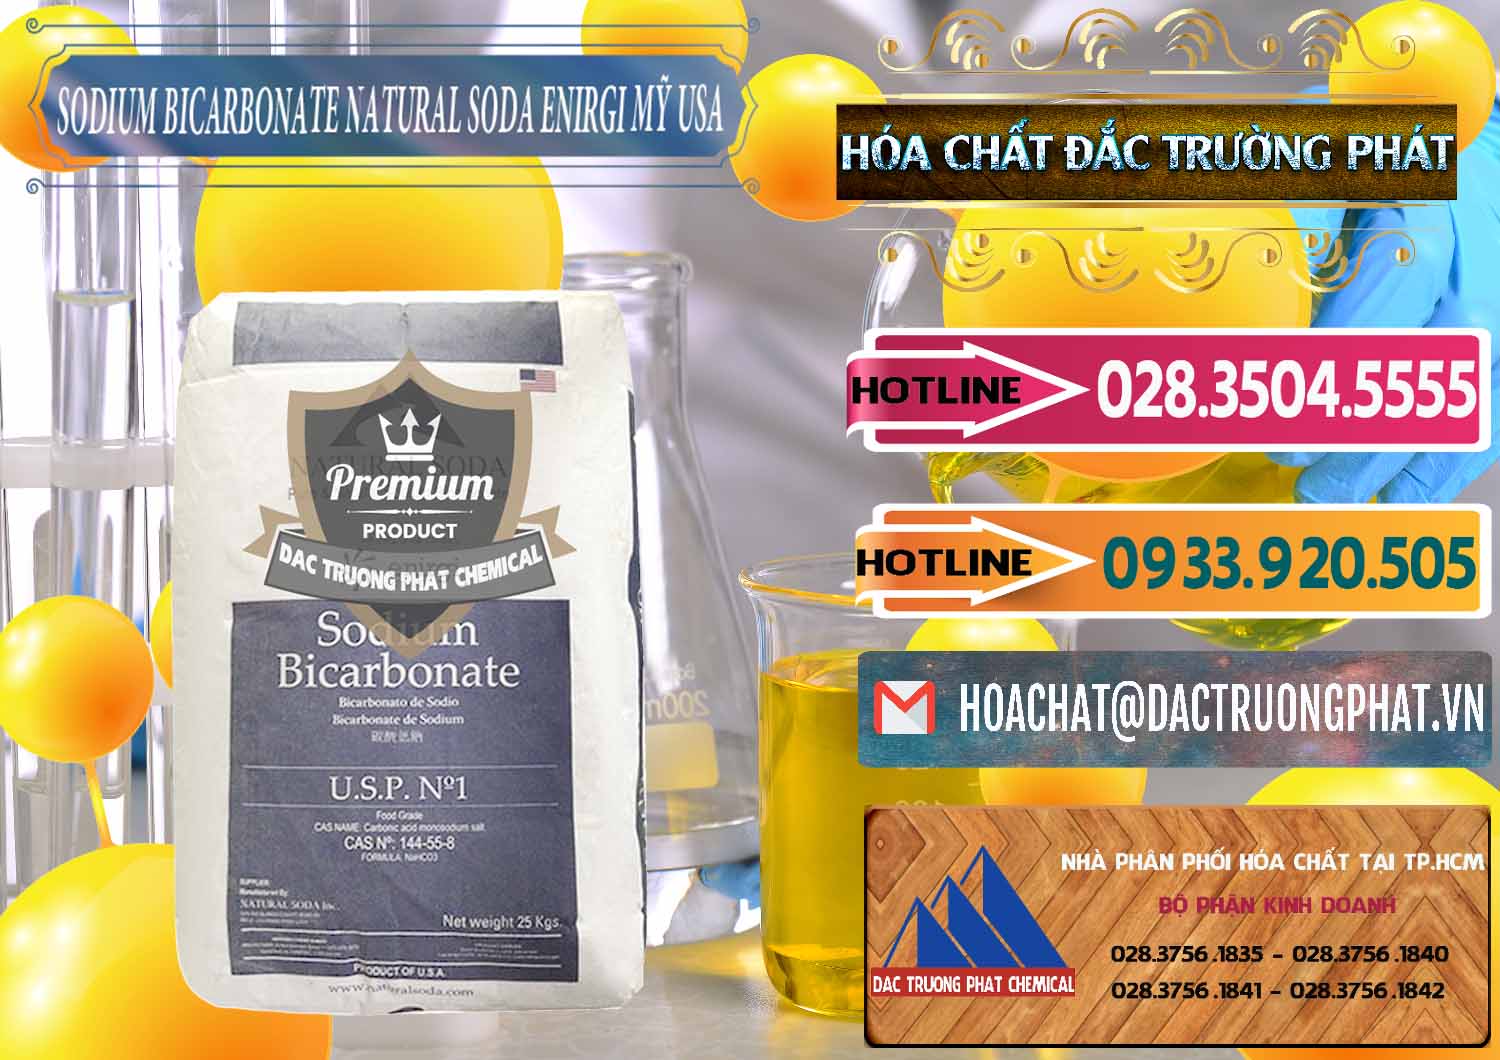 Bán và phân phối Sodium Bicarbonate – Bicar NaHCO3 Food Grade Natural Soda Enirgi Mỹ USA - 0257 - Công ty kinh doanh và cung cấp hóa chất tại TP.HCM - dactruongphat.vn